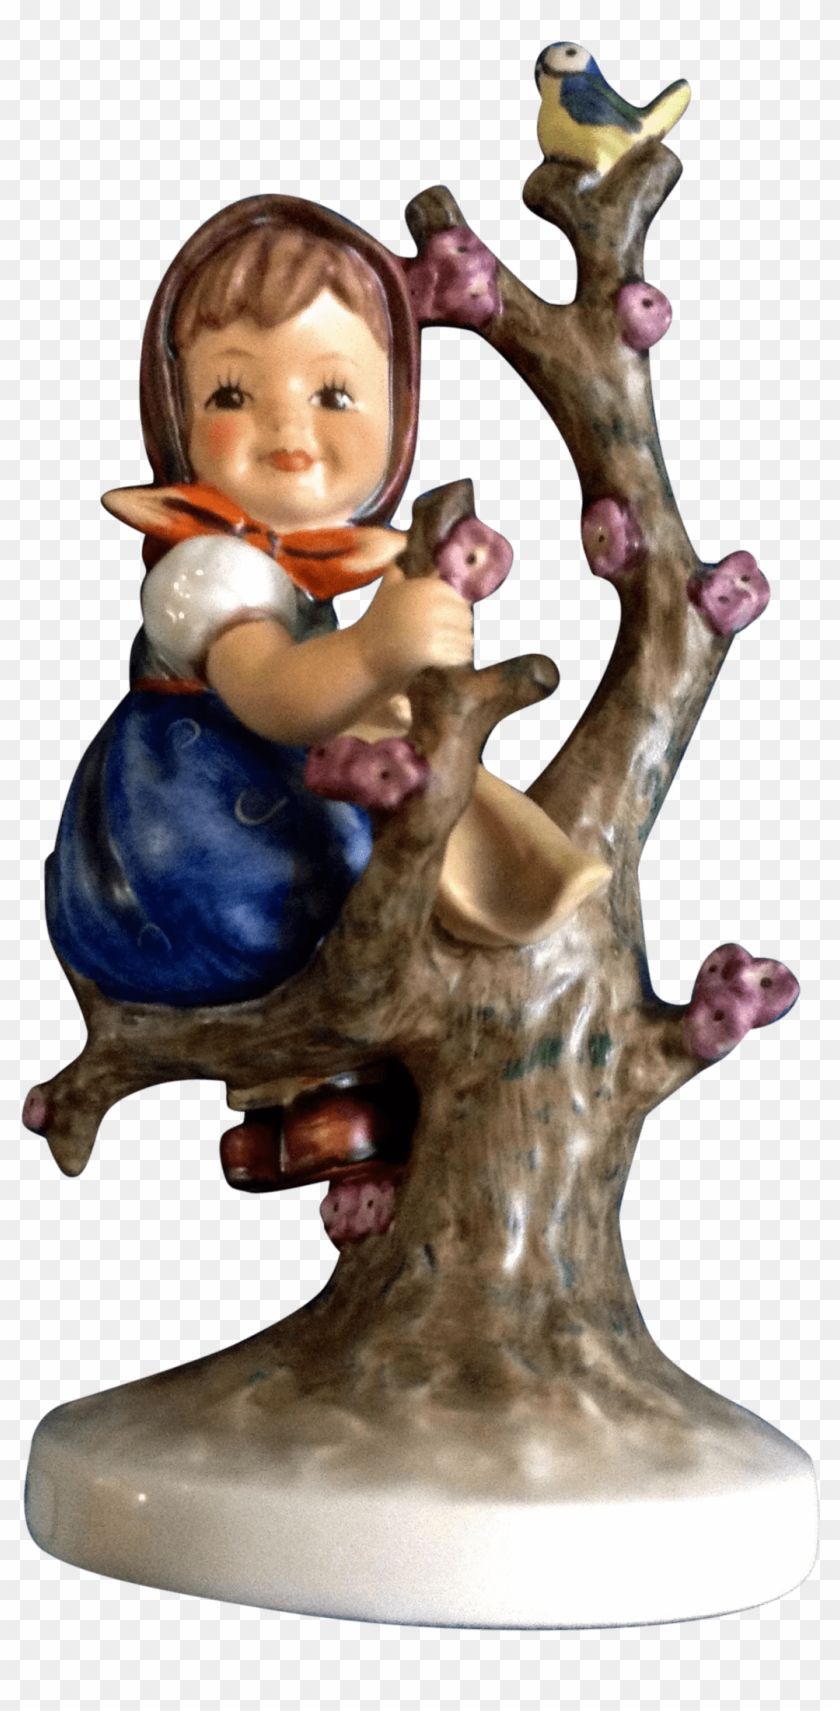 Apple Tree Girl Hummel Figurine - Hummel Figurines Clipart #1651419